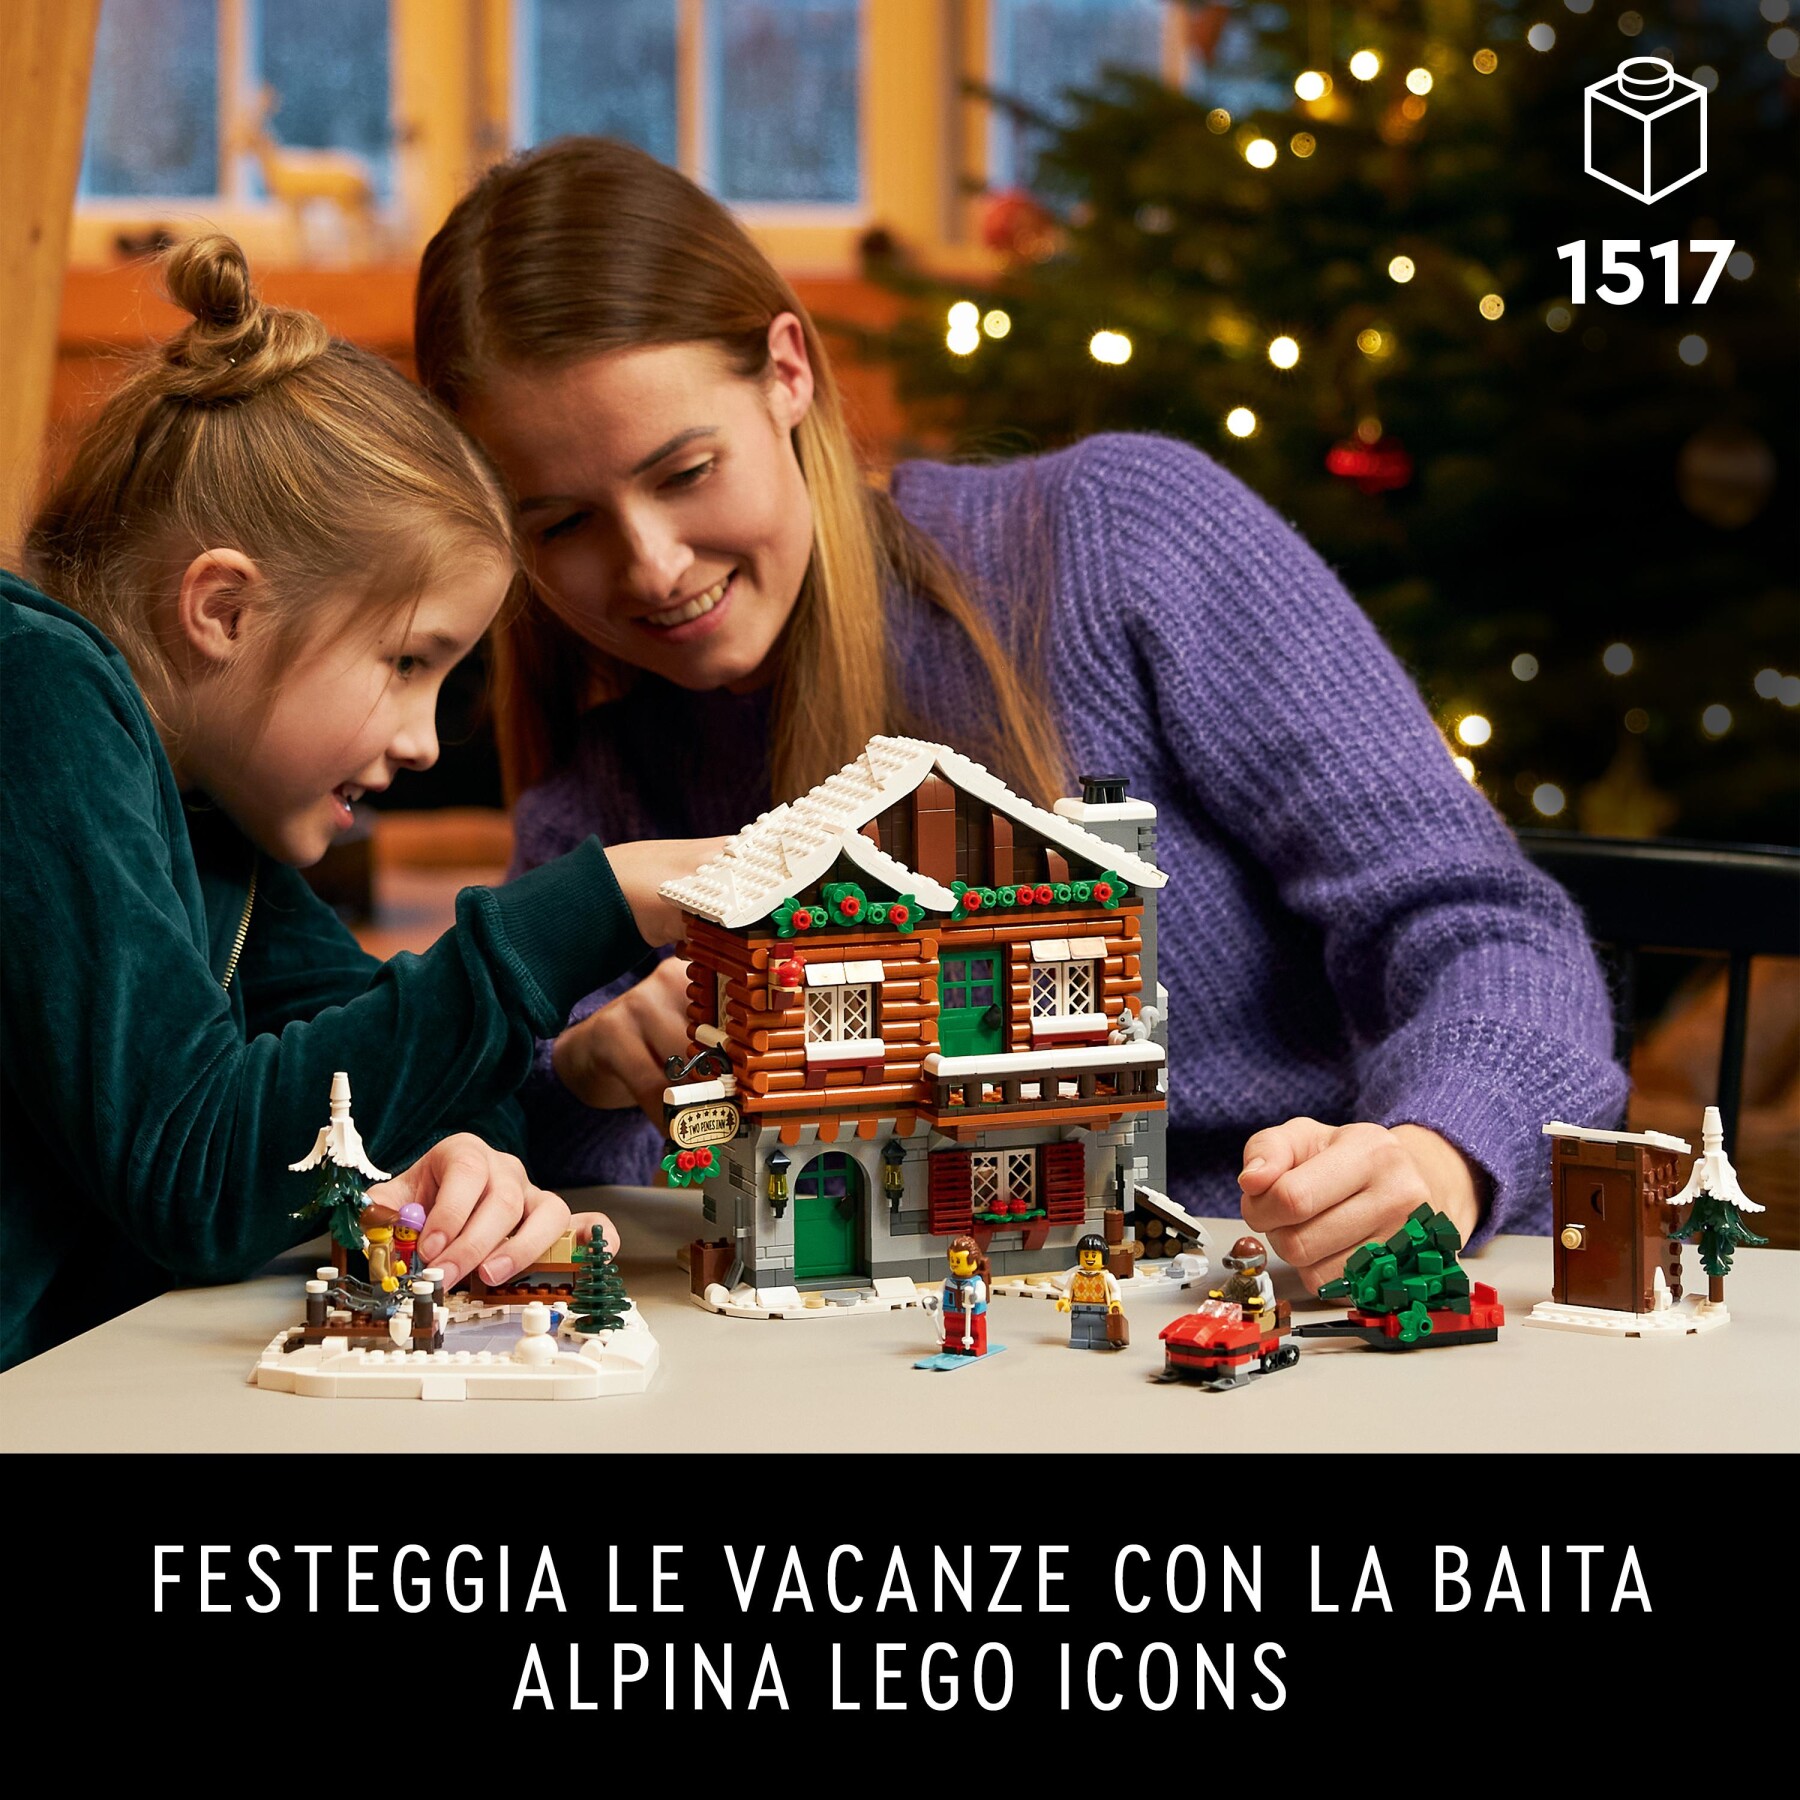 Lego icons 10325 baita alpina, modellino di casa con minifigure, modellismo da costruire per adulti, regalo per donna e uomo - Lego, LEGO ICONS